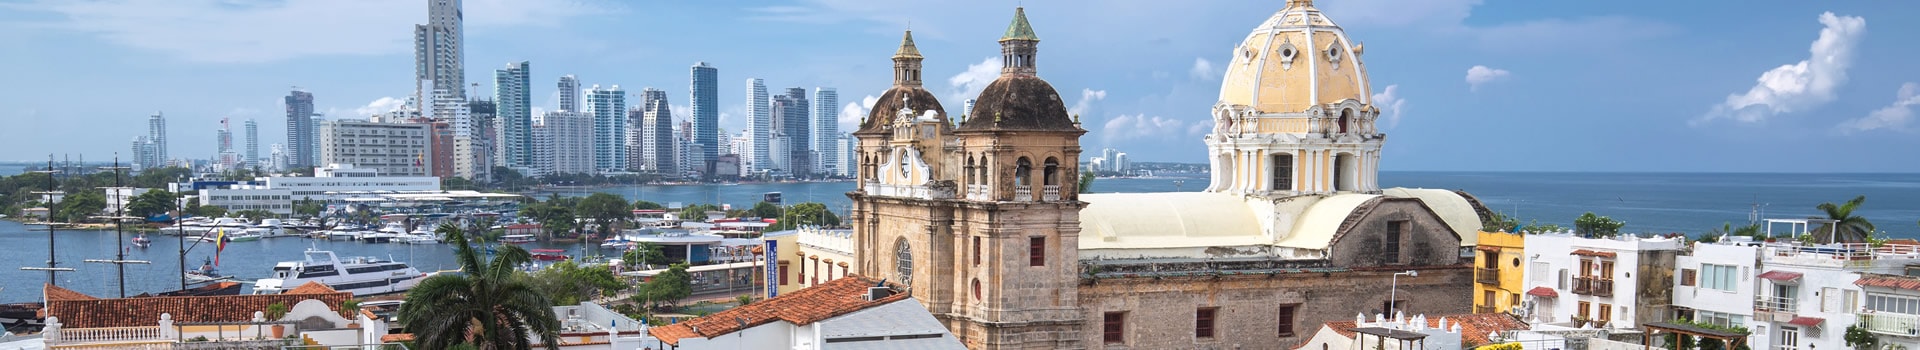 Pereira - Cartagena de indias